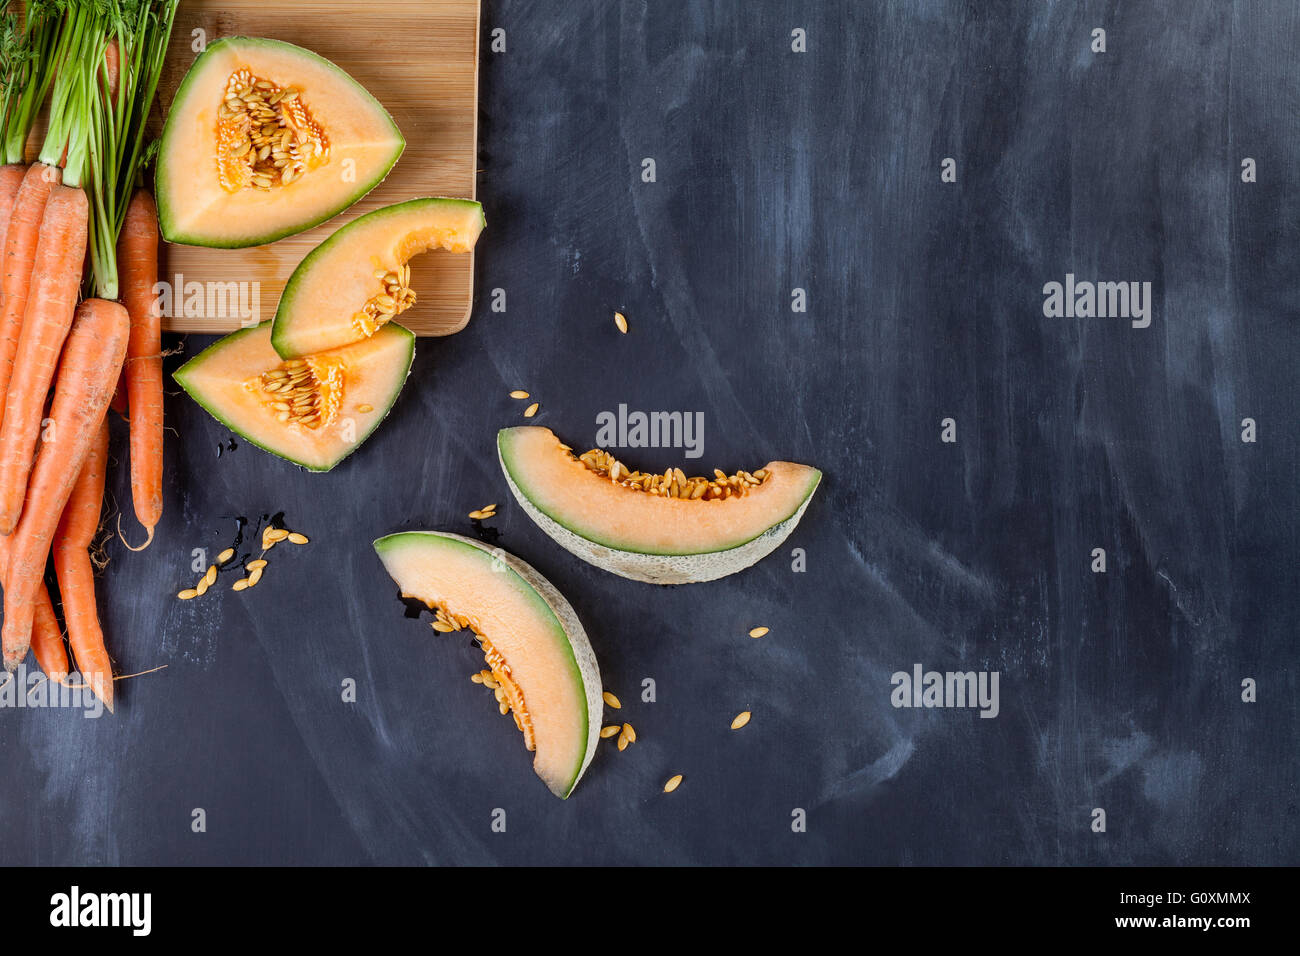 Scheiben von Melone und Haufen von Karotten auf Schneidebrett am schwarzen Brett Stockfoto